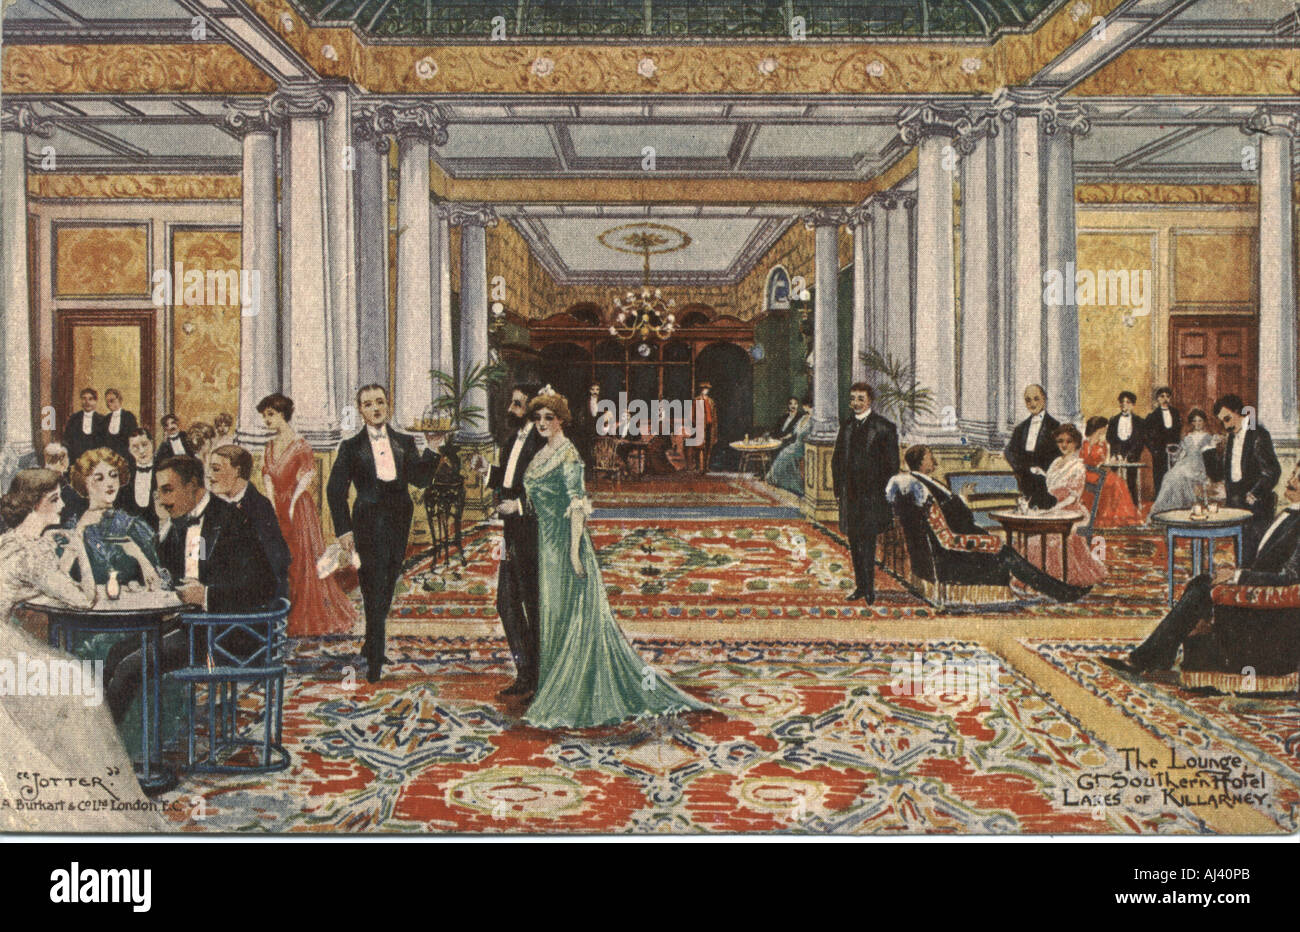 Werbe Postkarte für Great Southern Hotel, Killarney, Irland, vom Künstler "Jotter" ca. 1906 Stockfoto